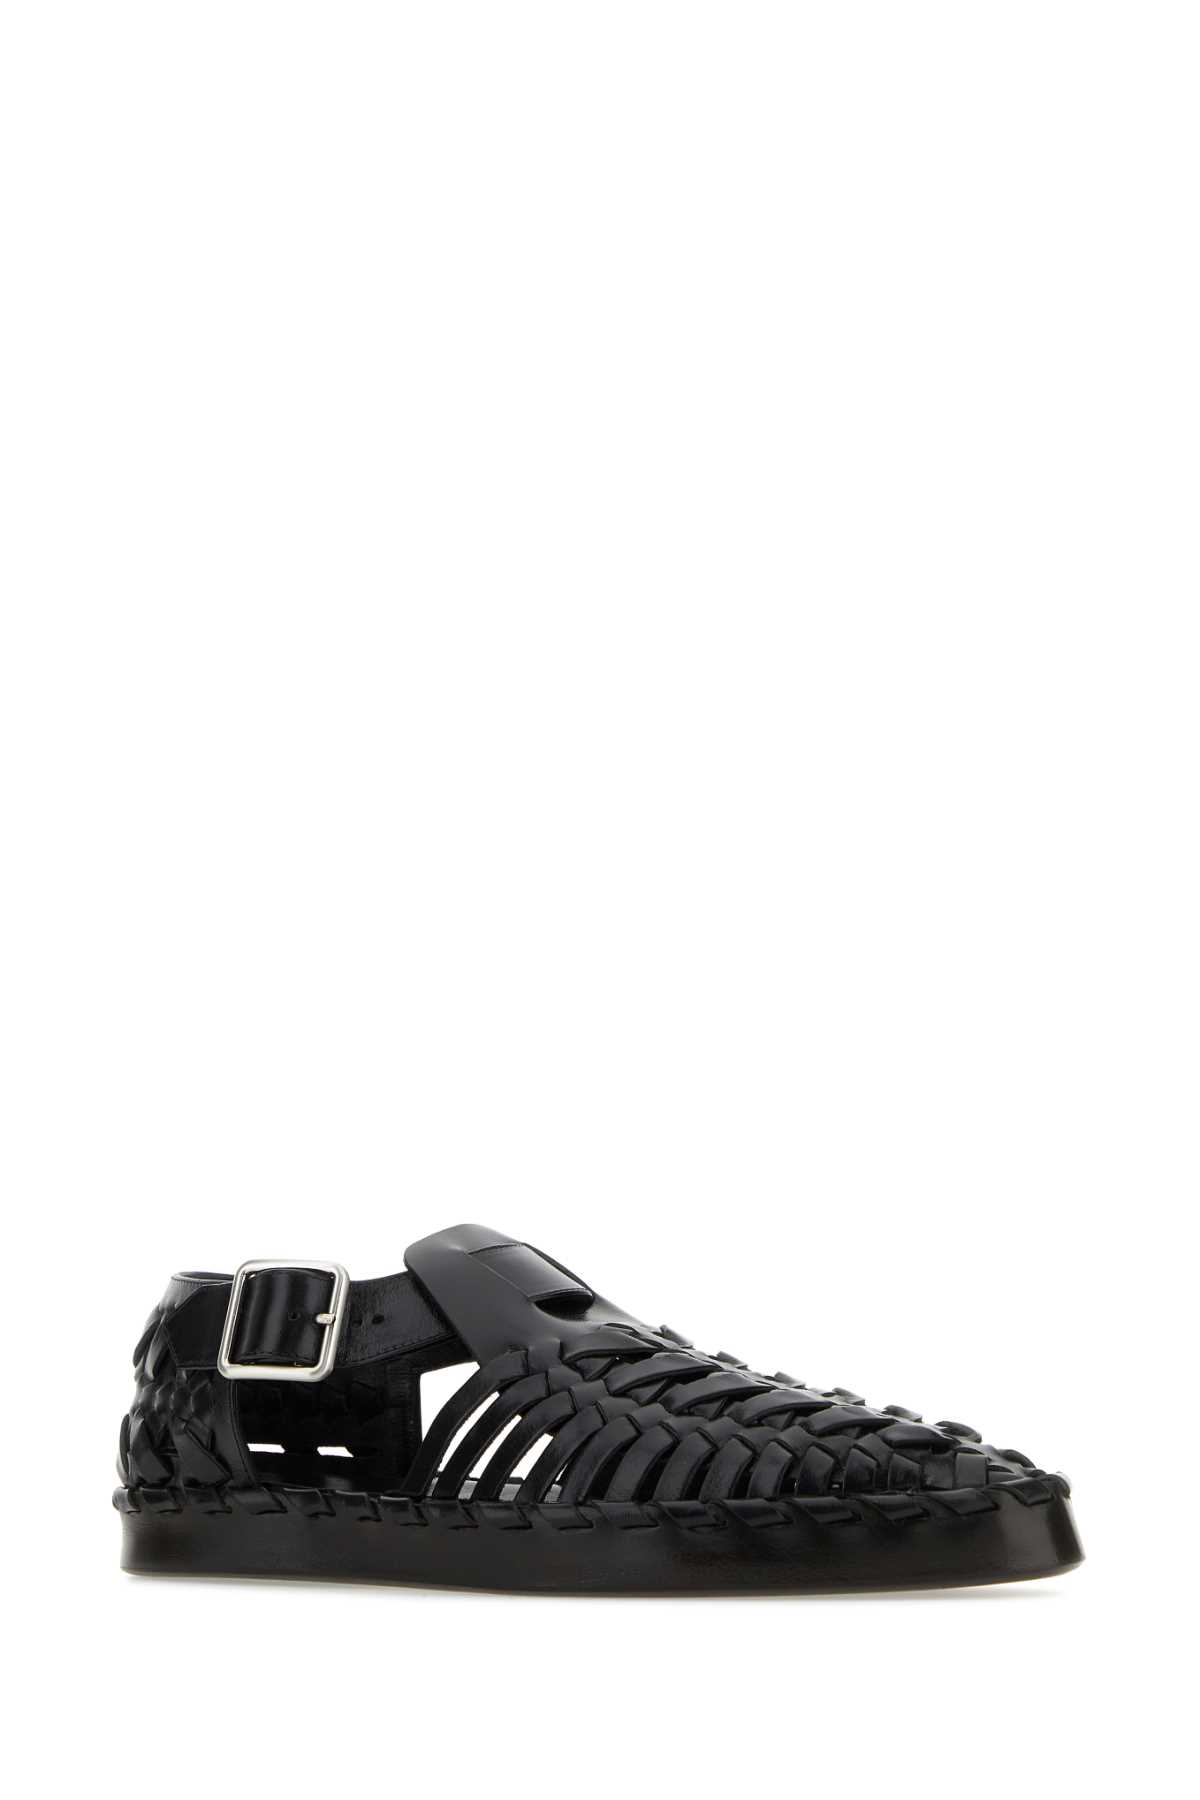 Jil Sander Black Leather Sandals In 001